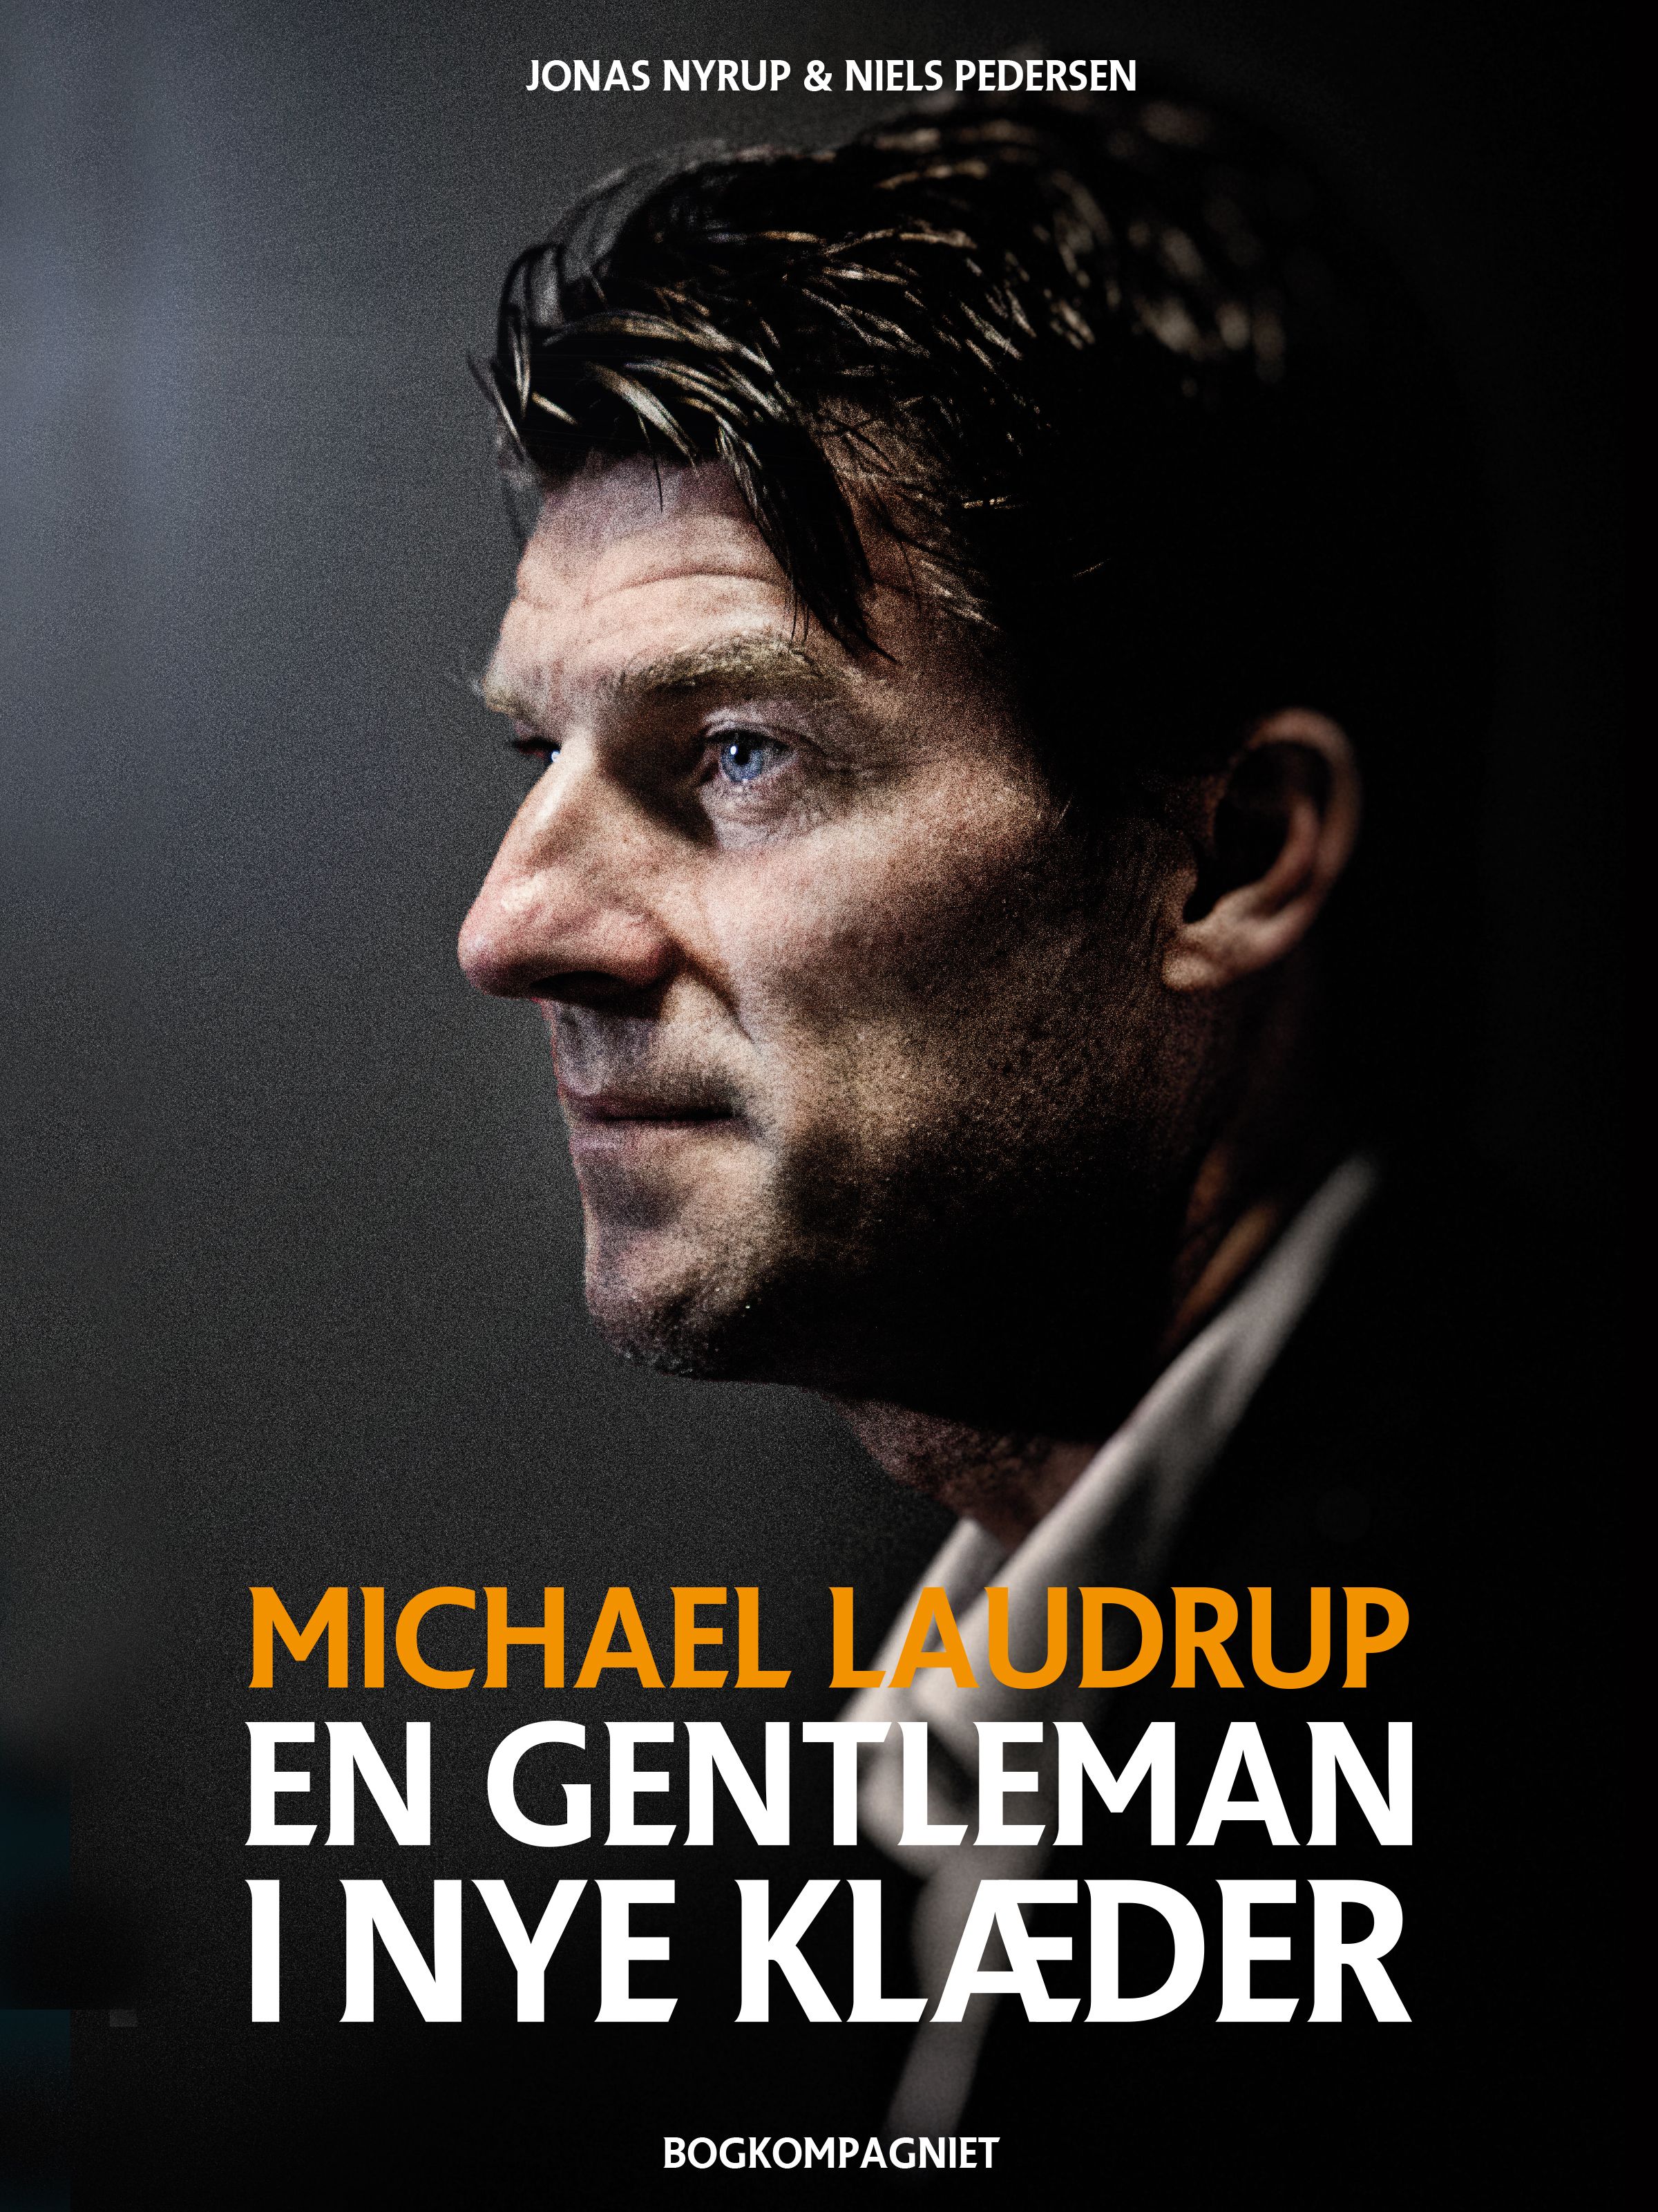 Michael Laudrup - en gentleman i nye klæder, e-bok av Jonas Nyrup, Niels Pedersen